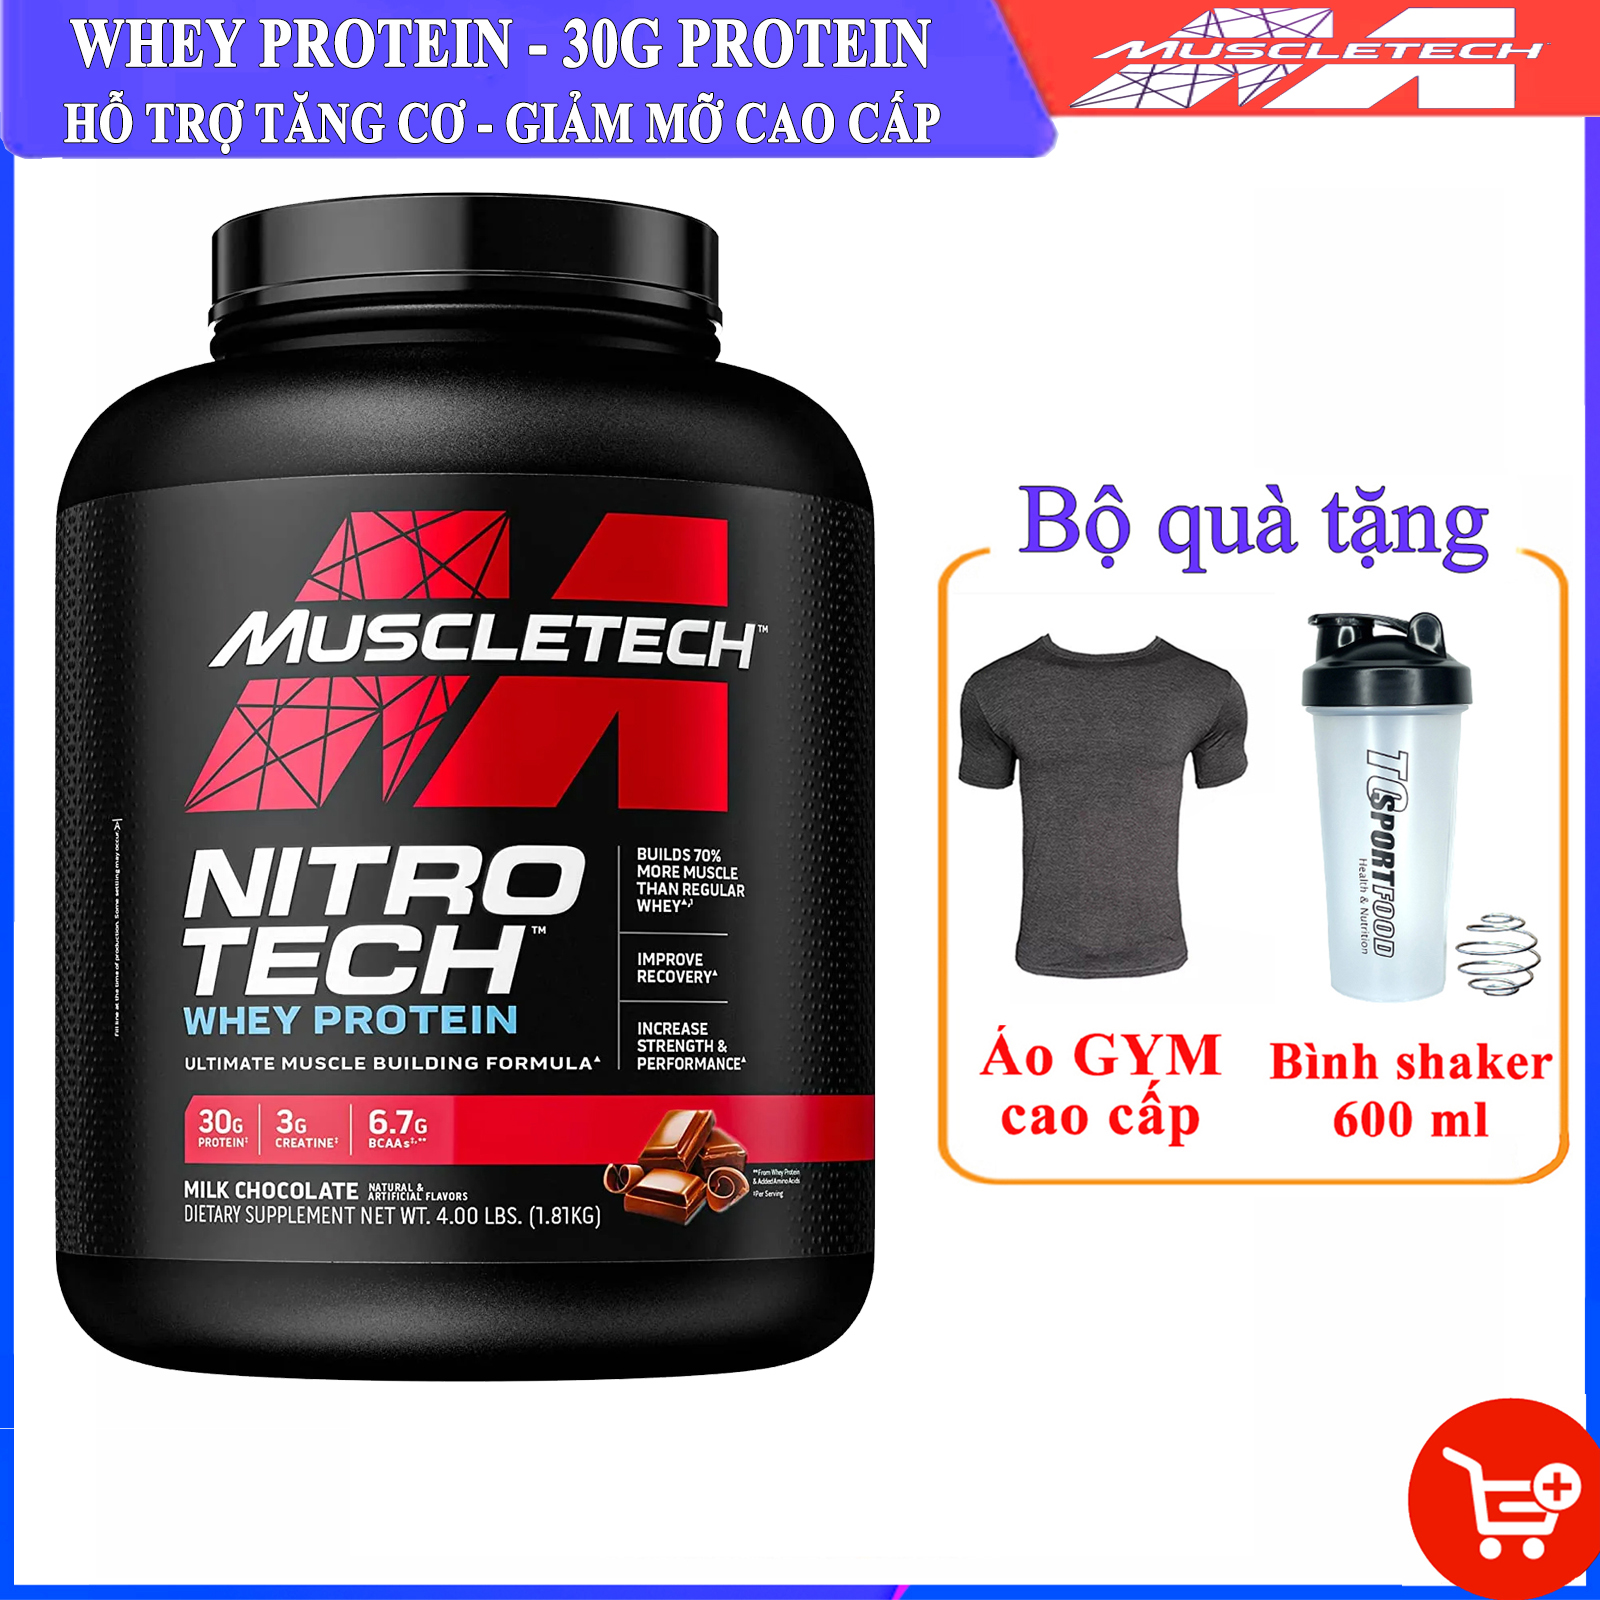 [TẶNG ÁO VÀ BÌNH LẮC] Sữa tăng cơ giảm mỡ cao cấp Whey Protein Nitro Tech của MuscleTech hộp 1.8 kg hỗ trợ tăng sức bền sức mạnh đốt mỡ giảm cân cho người tập gym và chơi thể thao - thuc pham chuc nang thumbnail